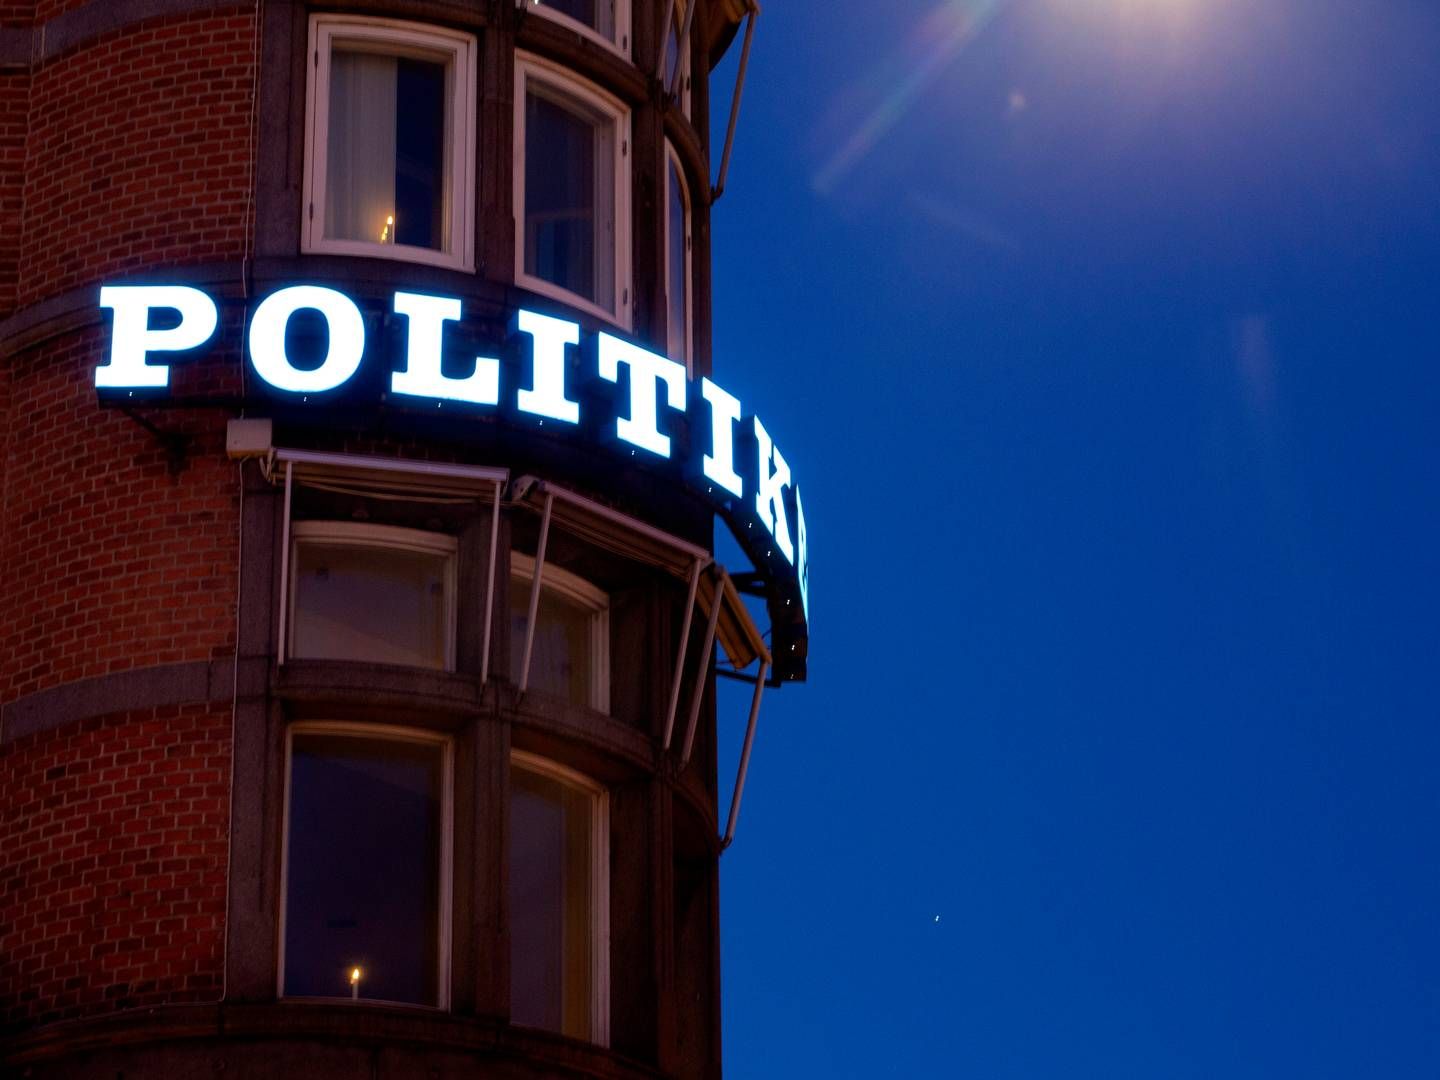 J/P Politikens Hus ejer Dao, der ifølge Fagbladet har haft problemer med flere arbejdsforhold. | Photo: Mads Nissen/Ritzau Scanpix